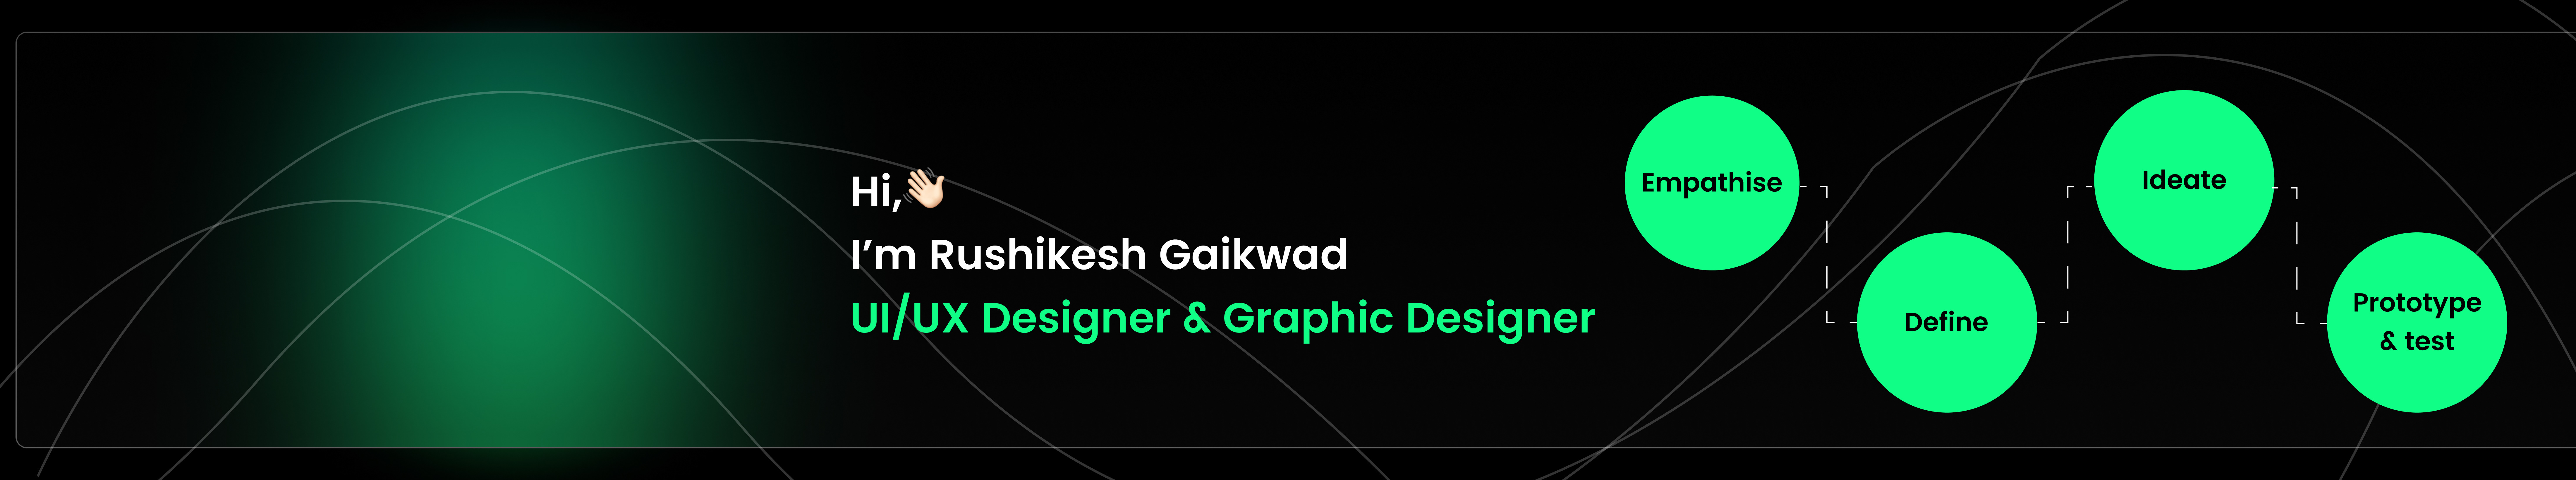 Bannière de profil de Rushikesh Gaikwad